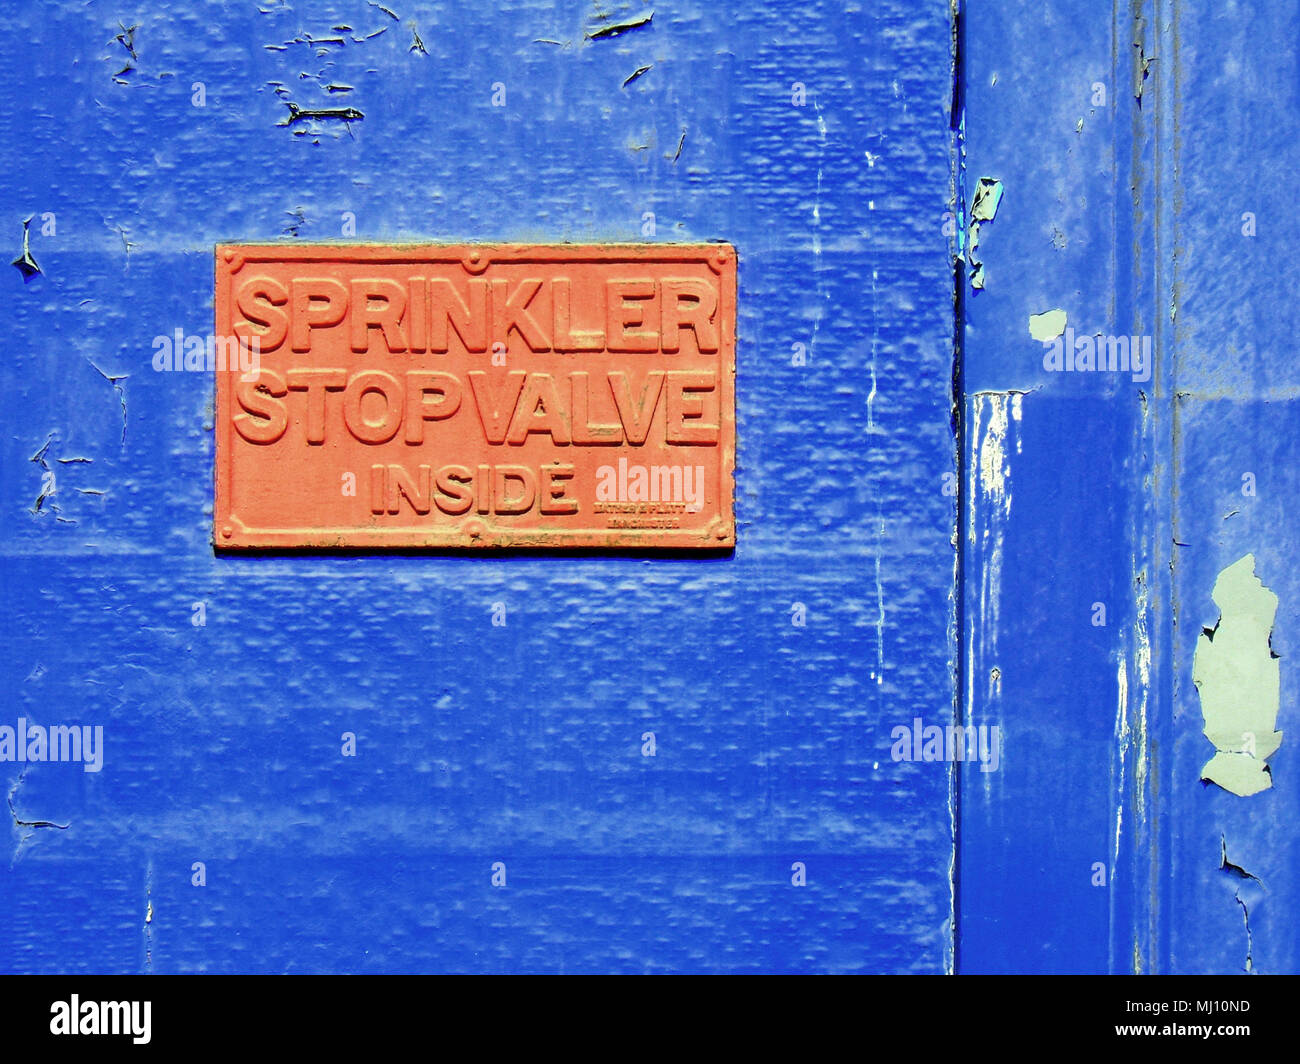 Sprinklerschutz stop Ventil im Inneren zeichen Orange auf Blau Gebäude Hintergrund Stockfoto